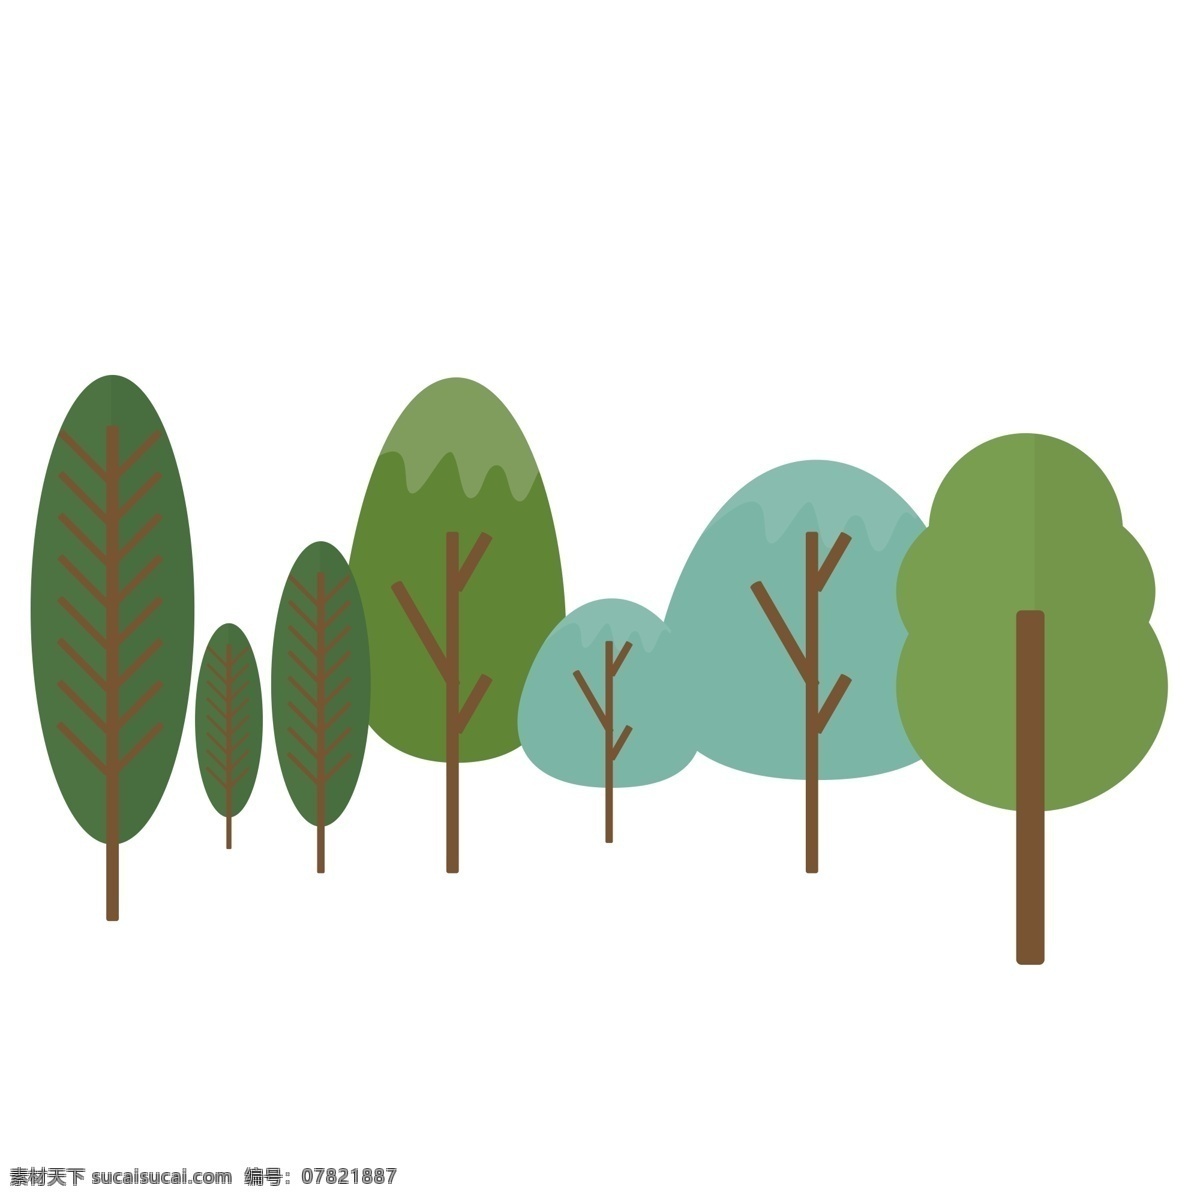 自然 生长 树木 装饰 元素 装饰元素 大树 植物 森林 简约 树叶